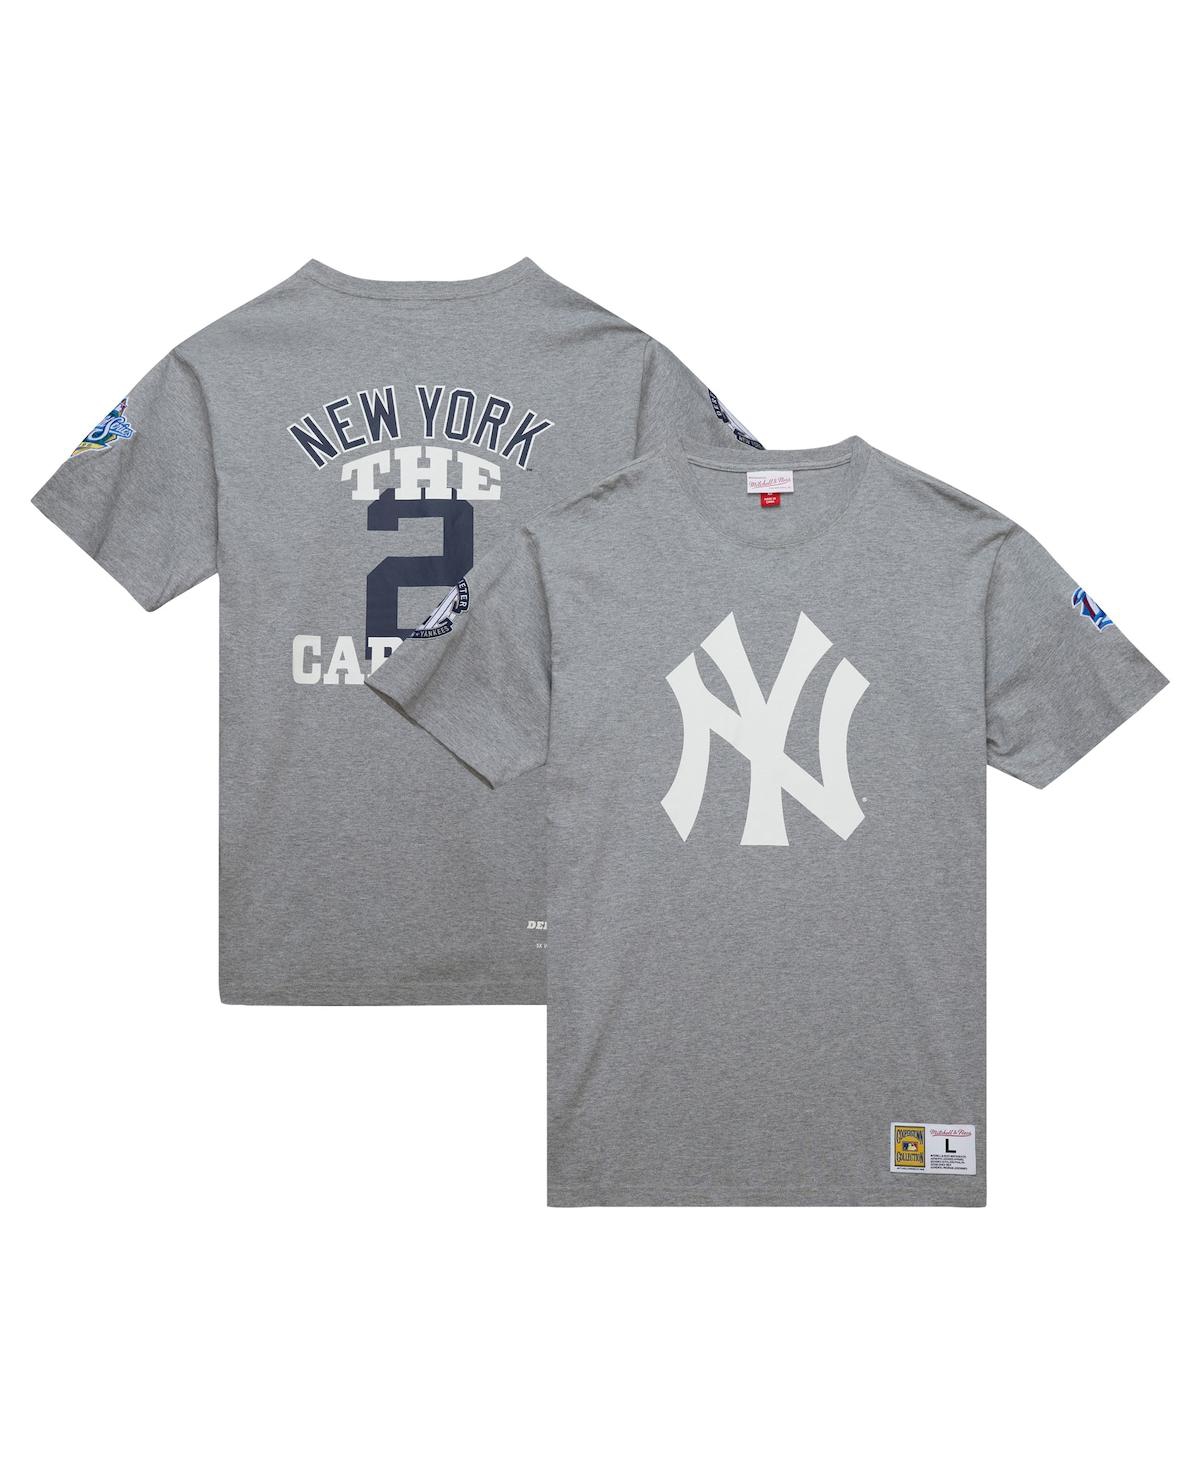 Men's Derek Jeter Heather Gray New York Yankees Cooperstown Collection Legends T-Shirt - Grey